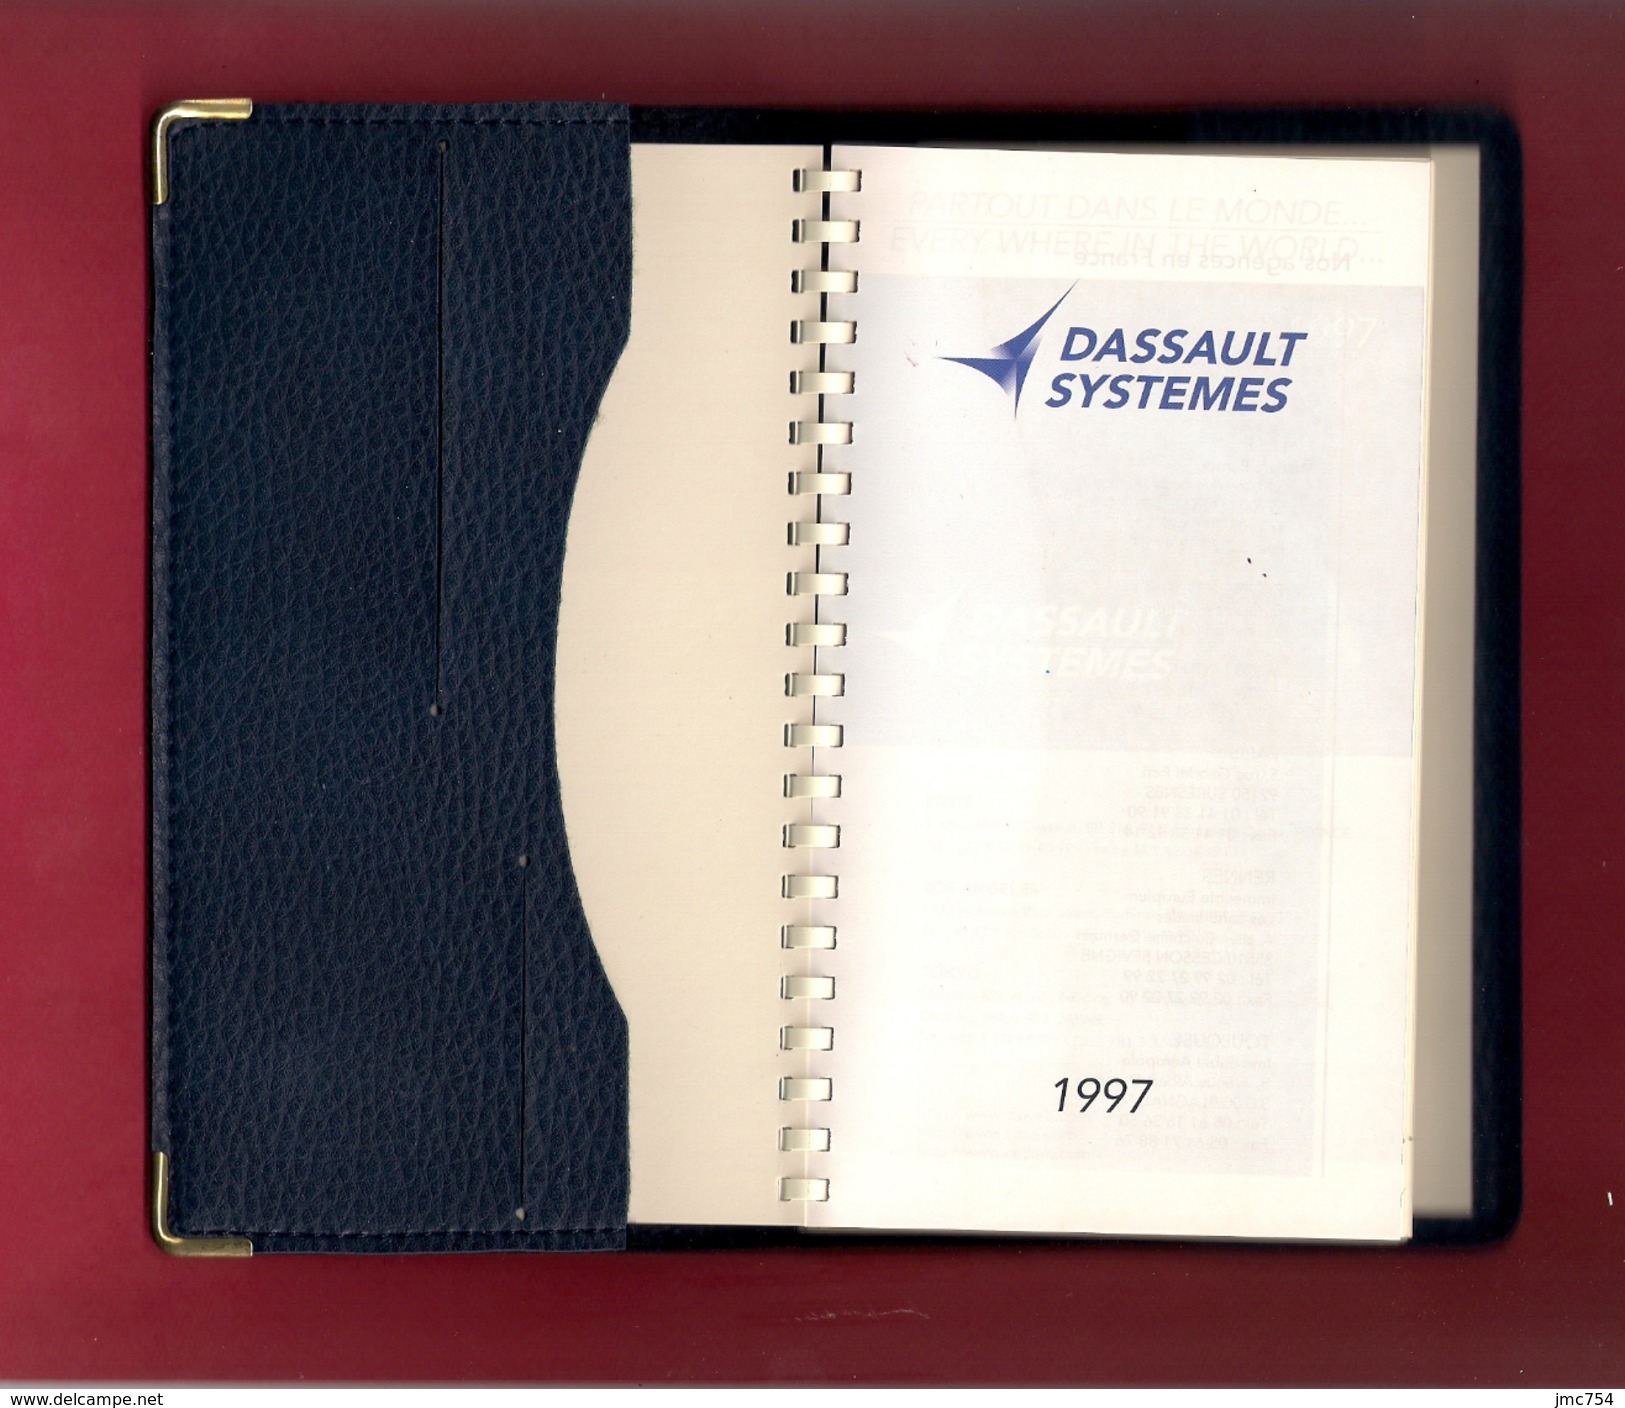 Agenda De Poche Vierge DASSAULT SYSTEMES 1997. - Agendas Vierges